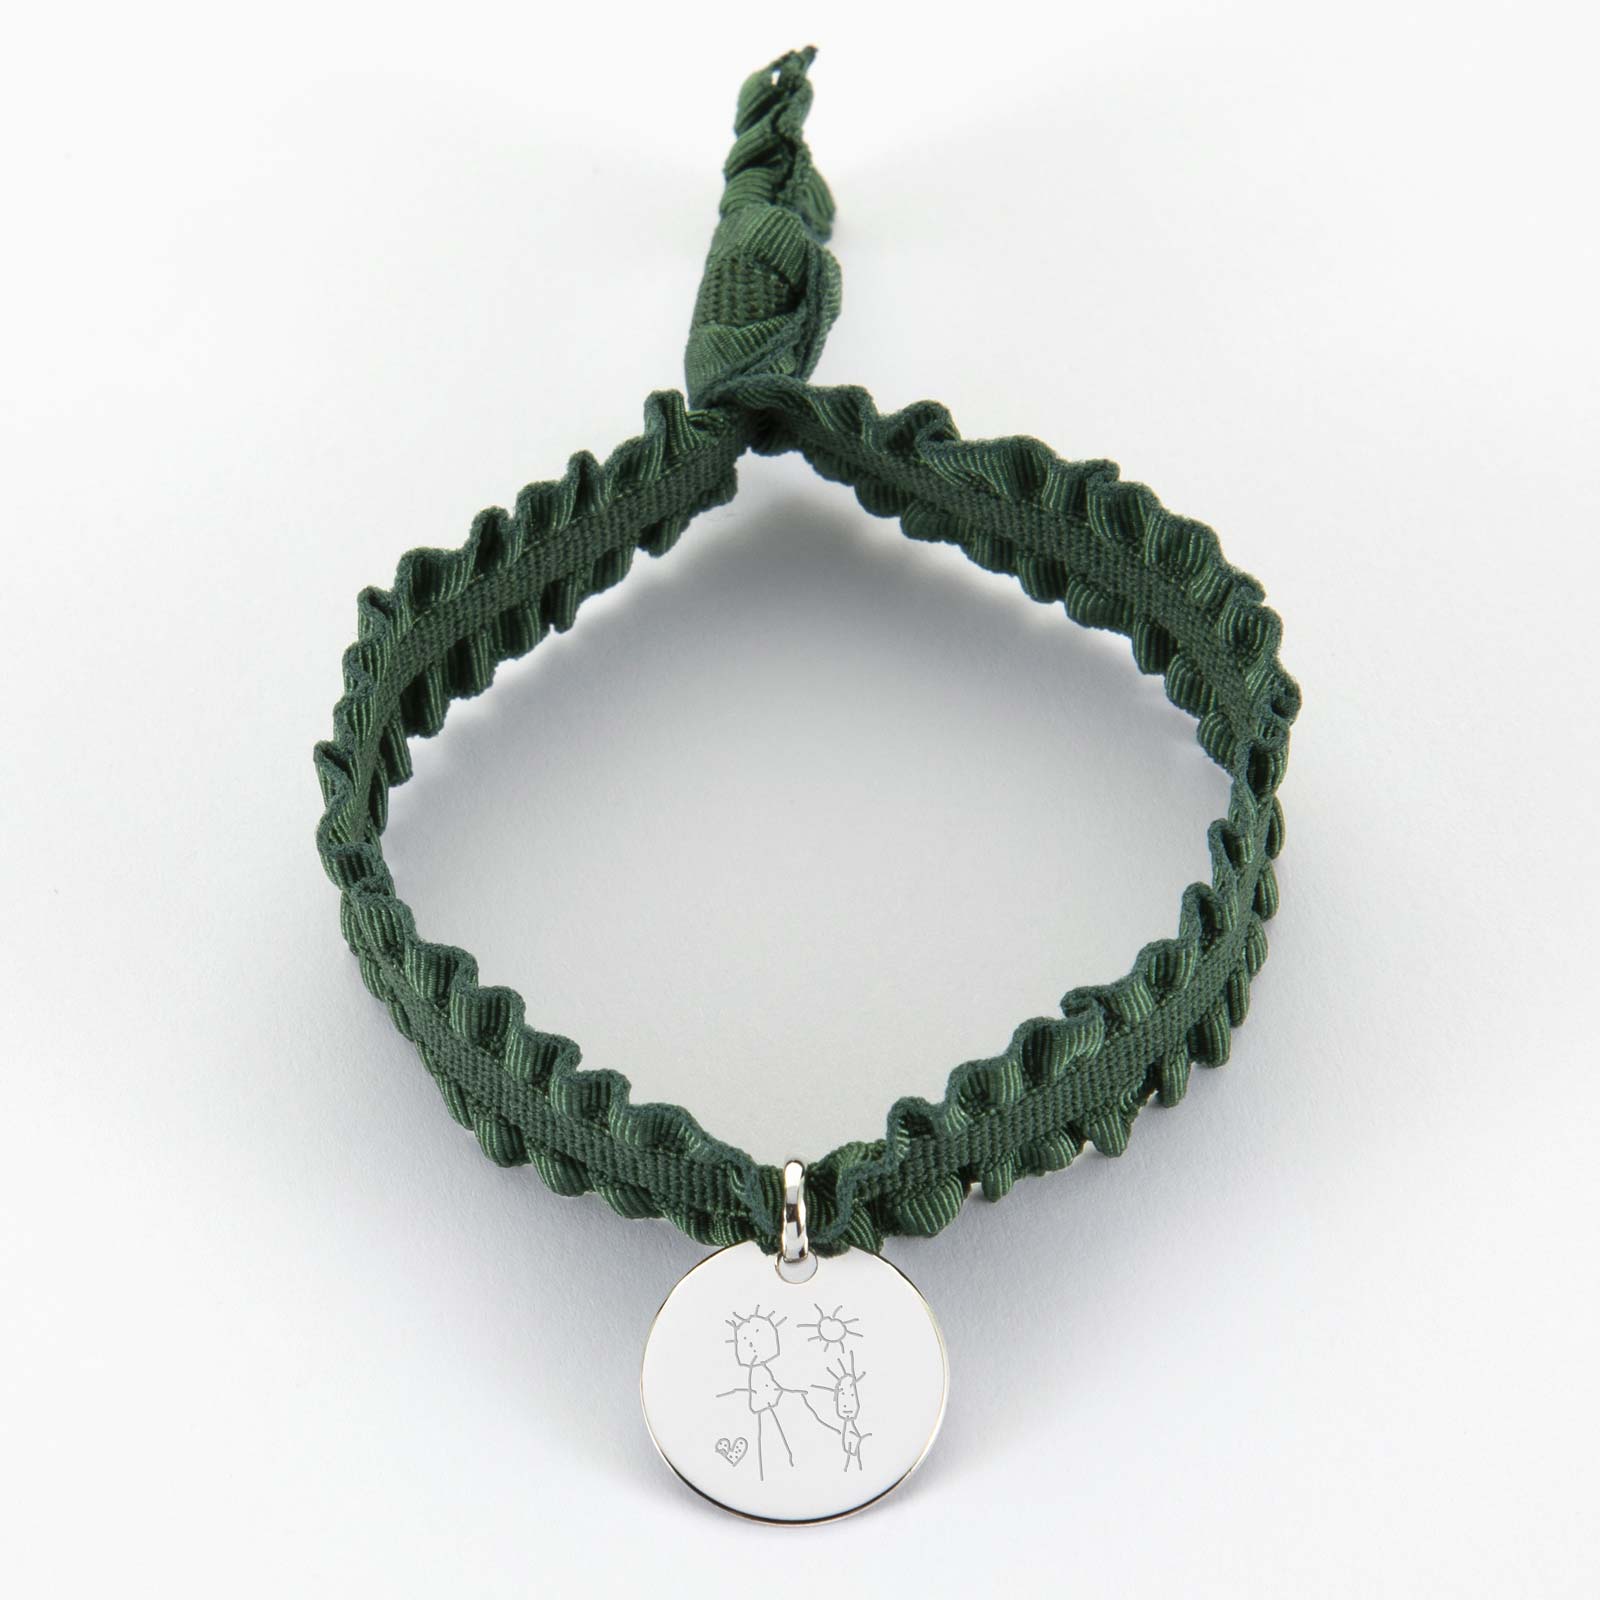 Coffret personnalisés enfant de bracelets cordons interchangeables  élastiques médaille argent martelée gravée 15 mm